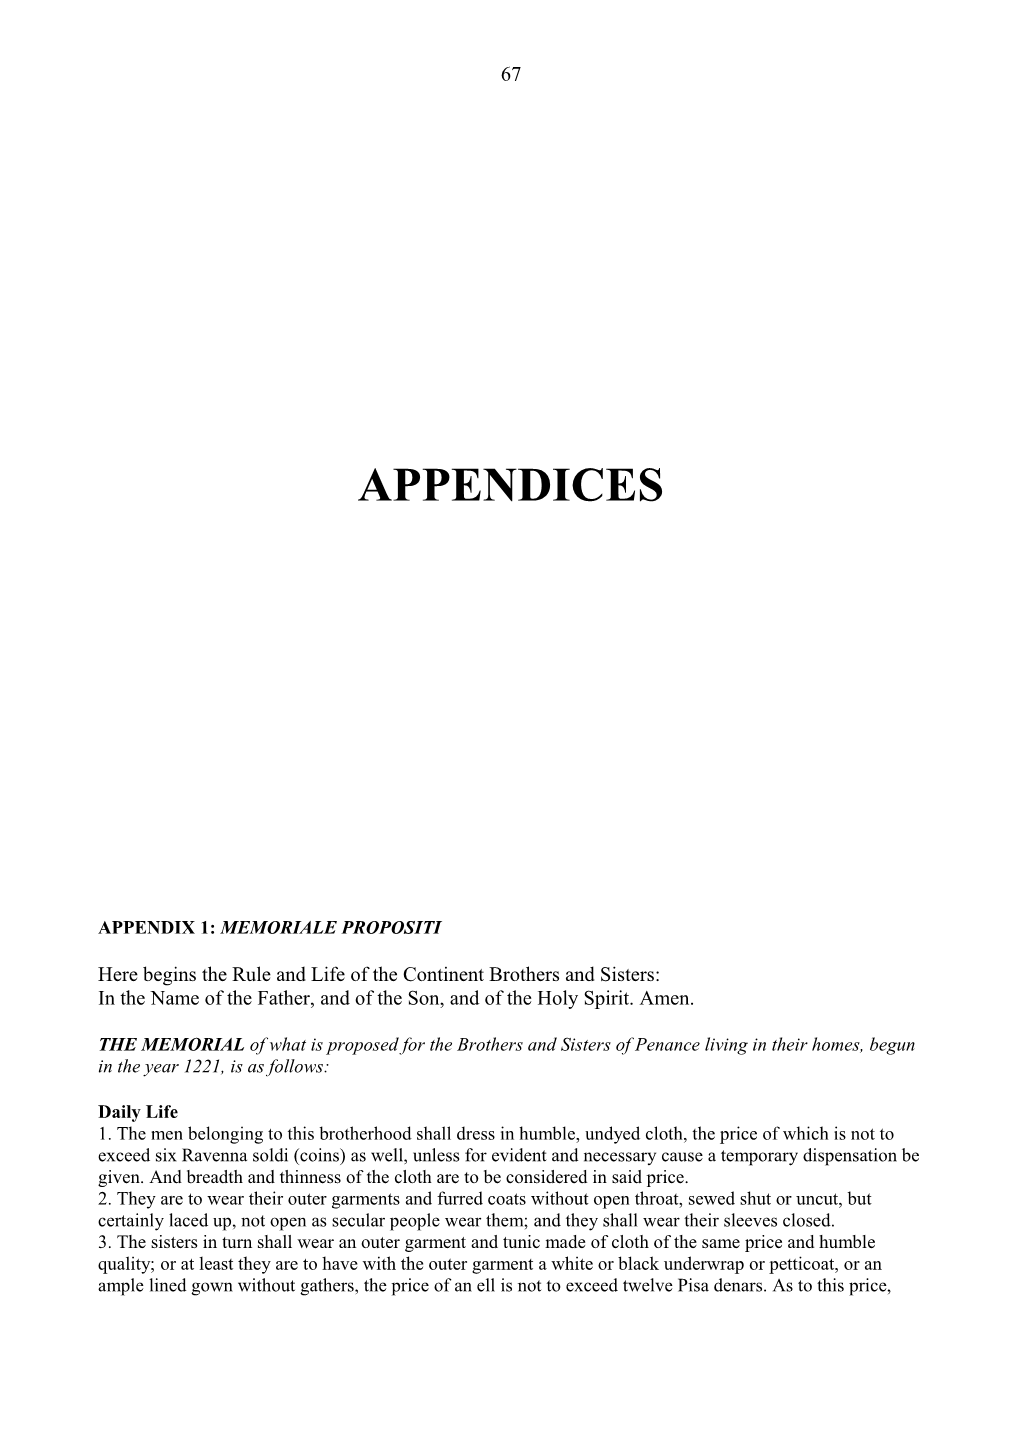 Appendix 1: Memoriale Propositi